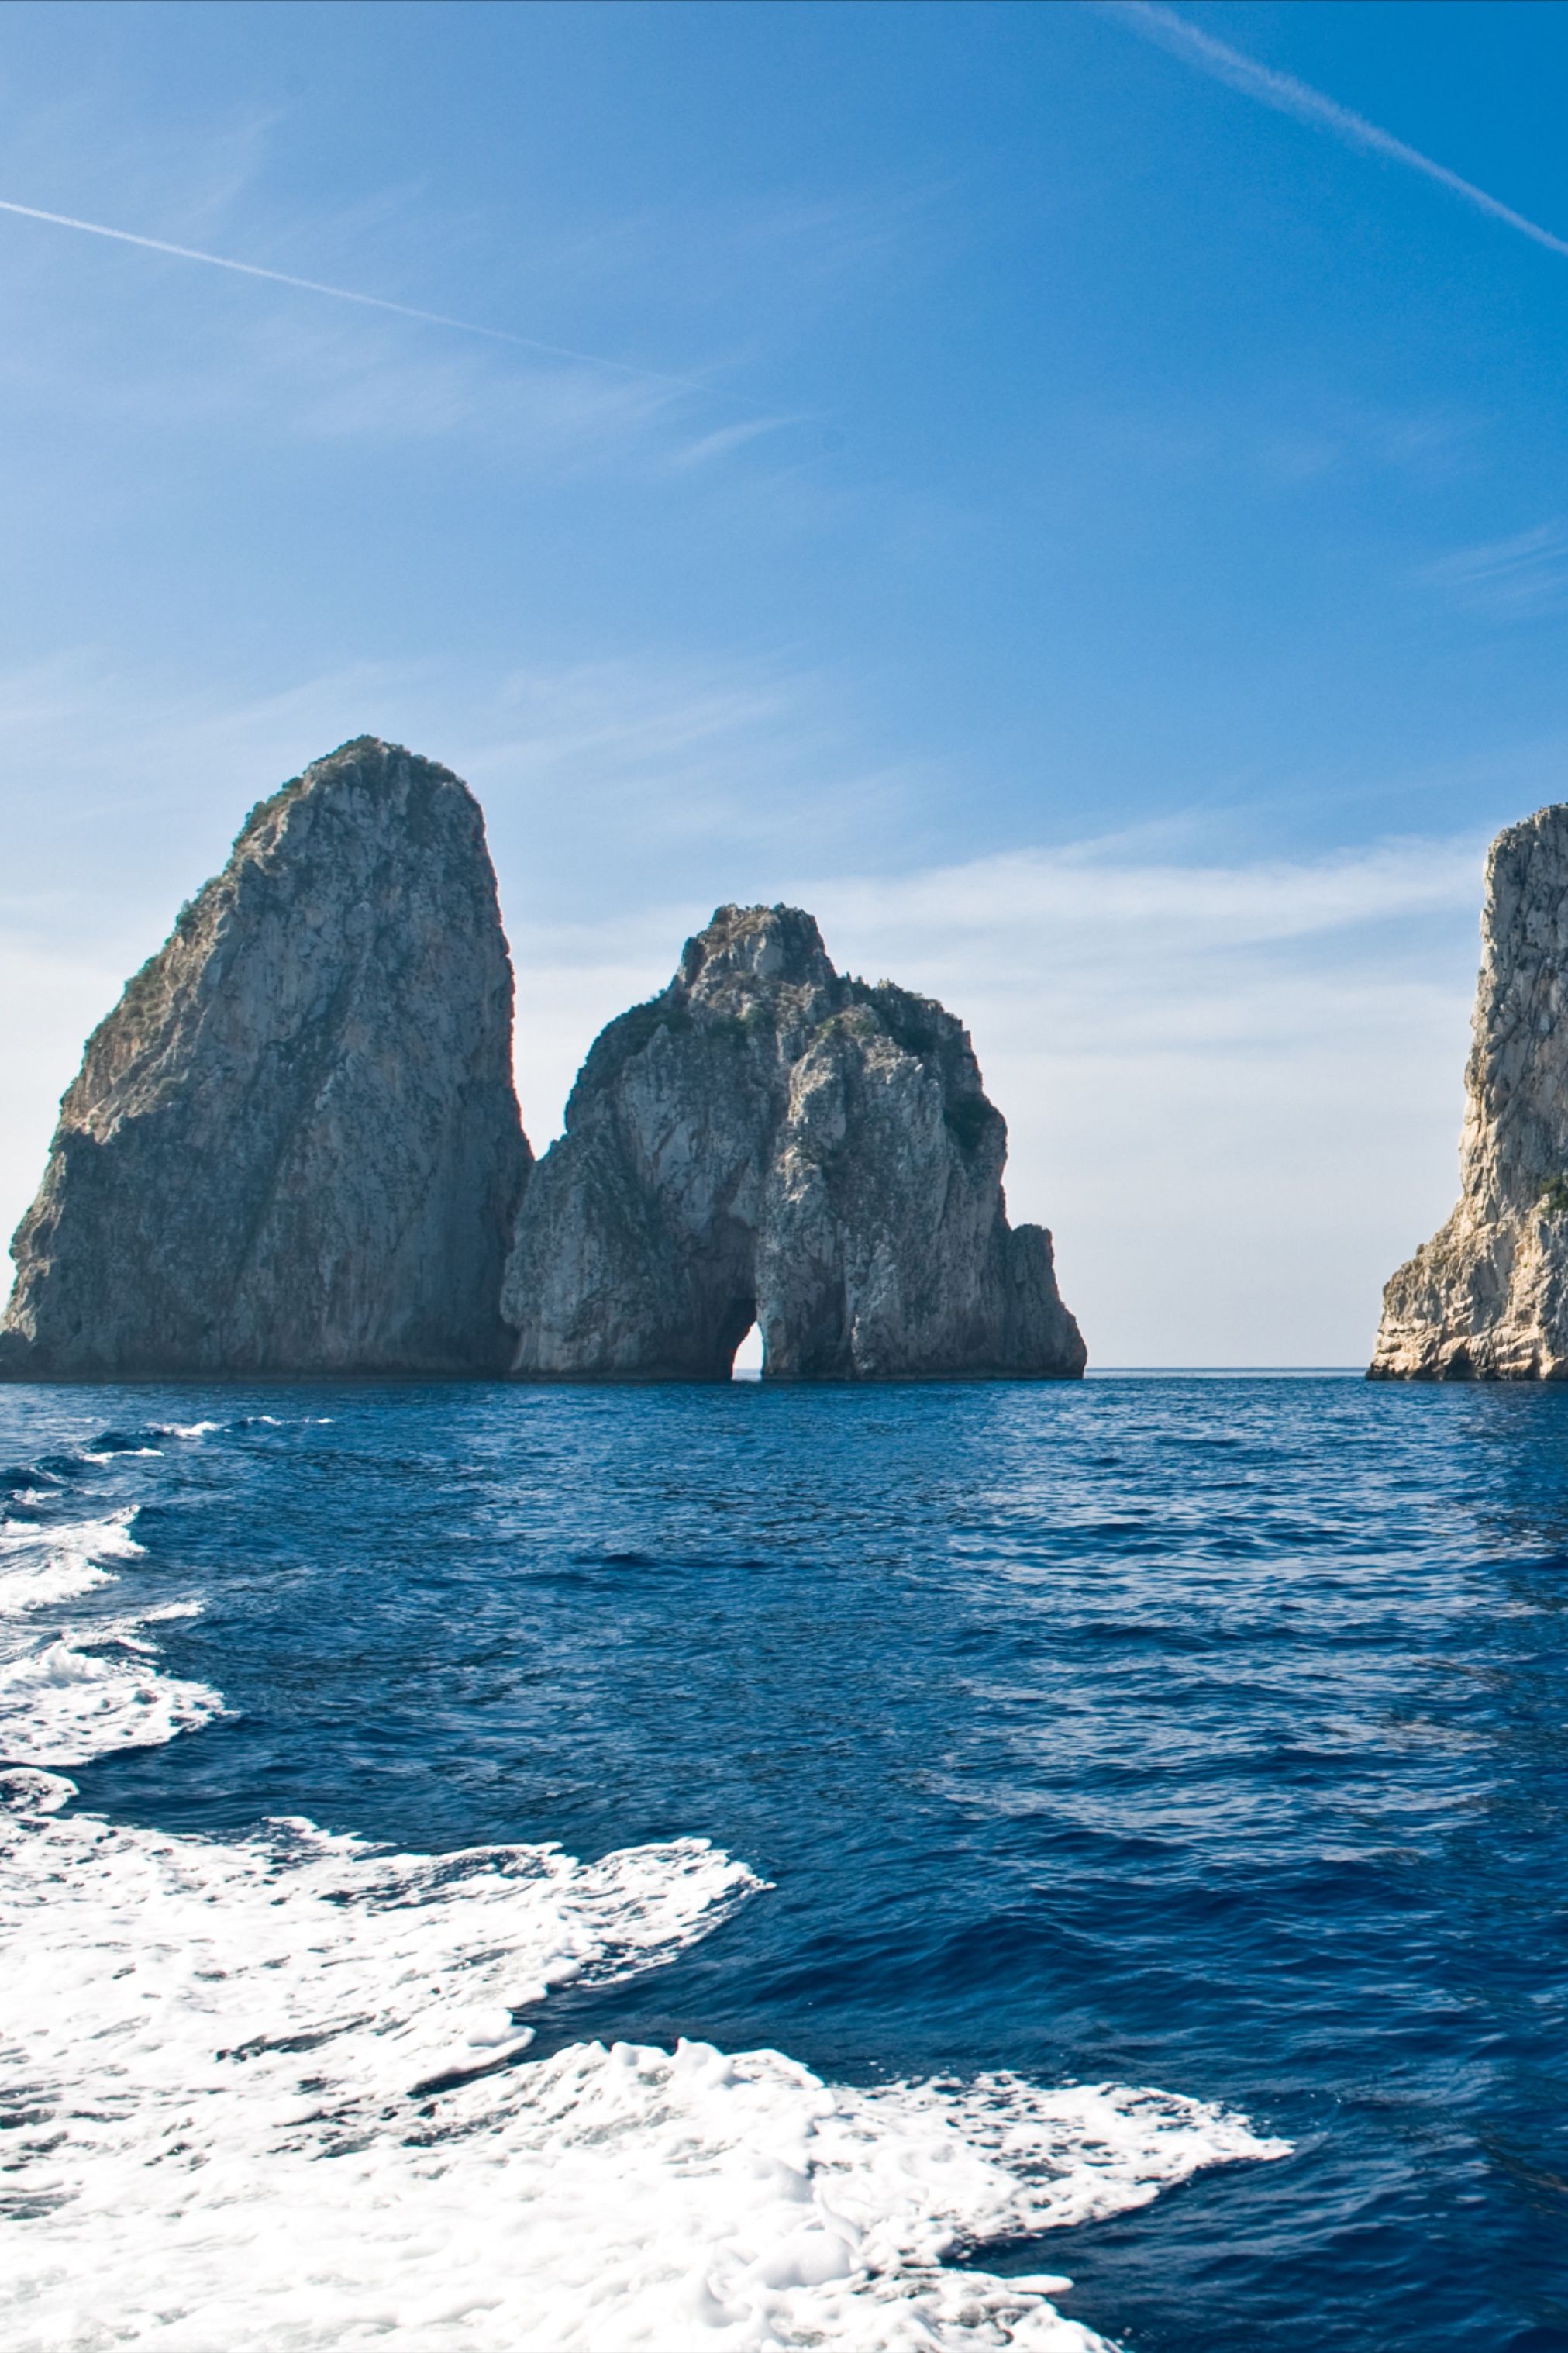 Capri, Italy Rocks. Cambodia travel destinations, Capri island, Italy